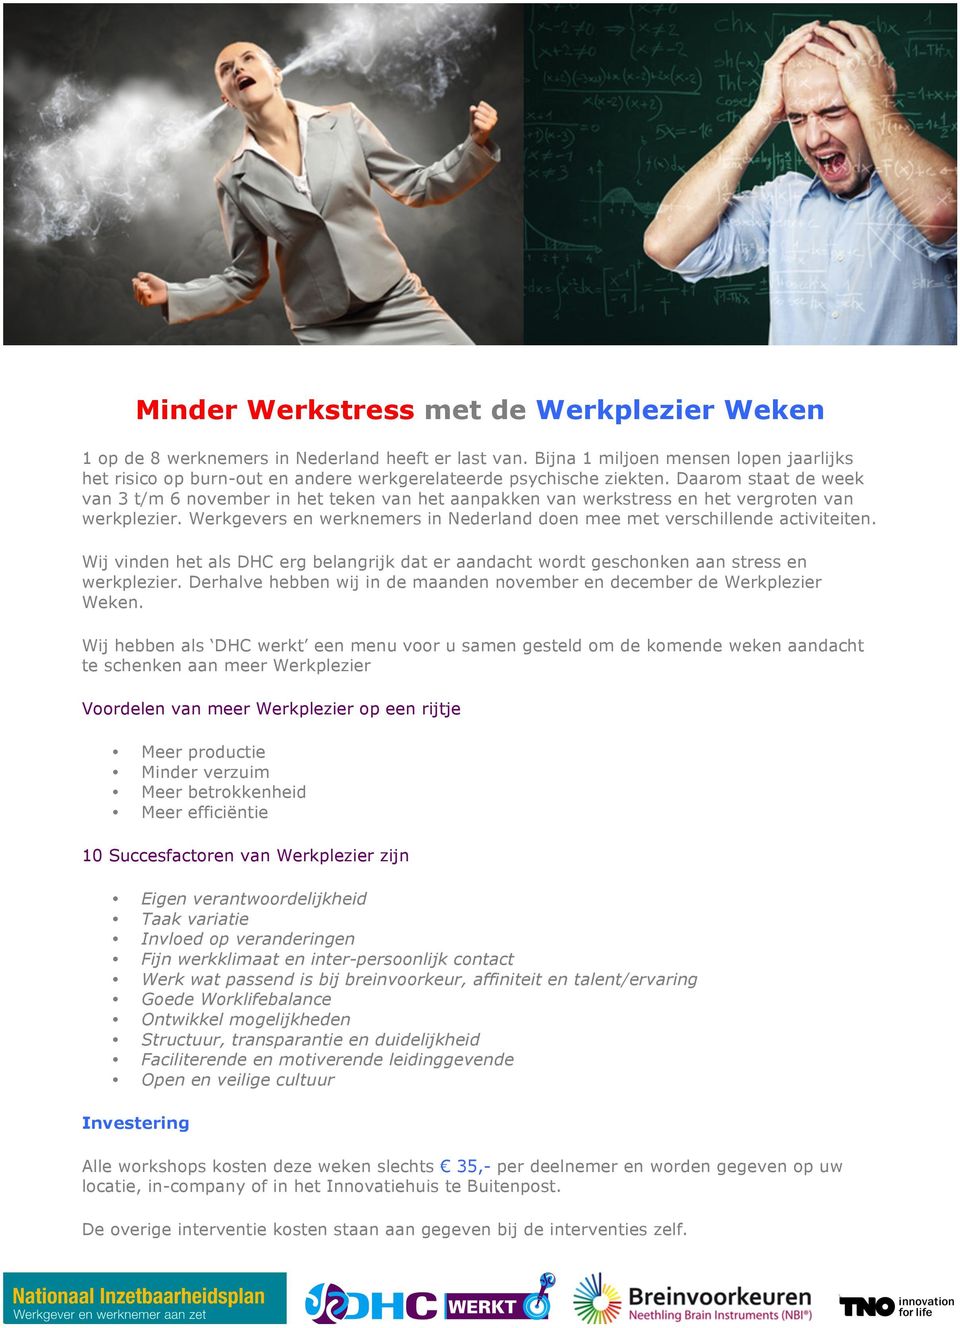 Daarom staat de week van 3 t/m 6 november in het teken van het aanpakken van werkstress en het vergroten van werkplezier. Werkgevers en werknemers in Nederland doen mee met verschillende activiteiten.